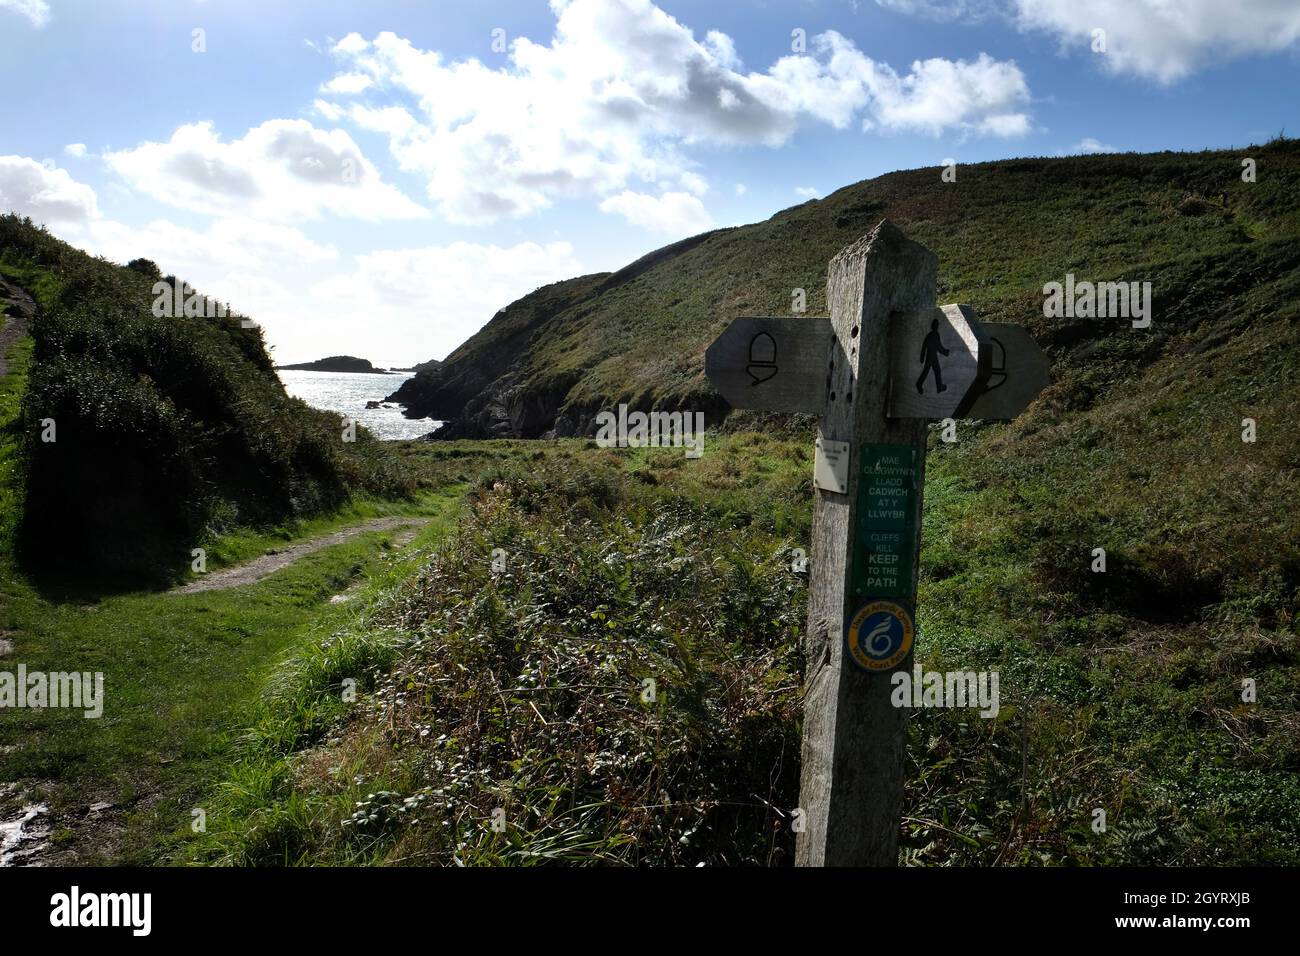 Señal de sendero sobre la bahía de Caer Bwdy en el camino costero de Pembrokeshire. La isla penpleidiana de Ynys se puede ver en alta mar. Gales, Reino Unido Foto de stock